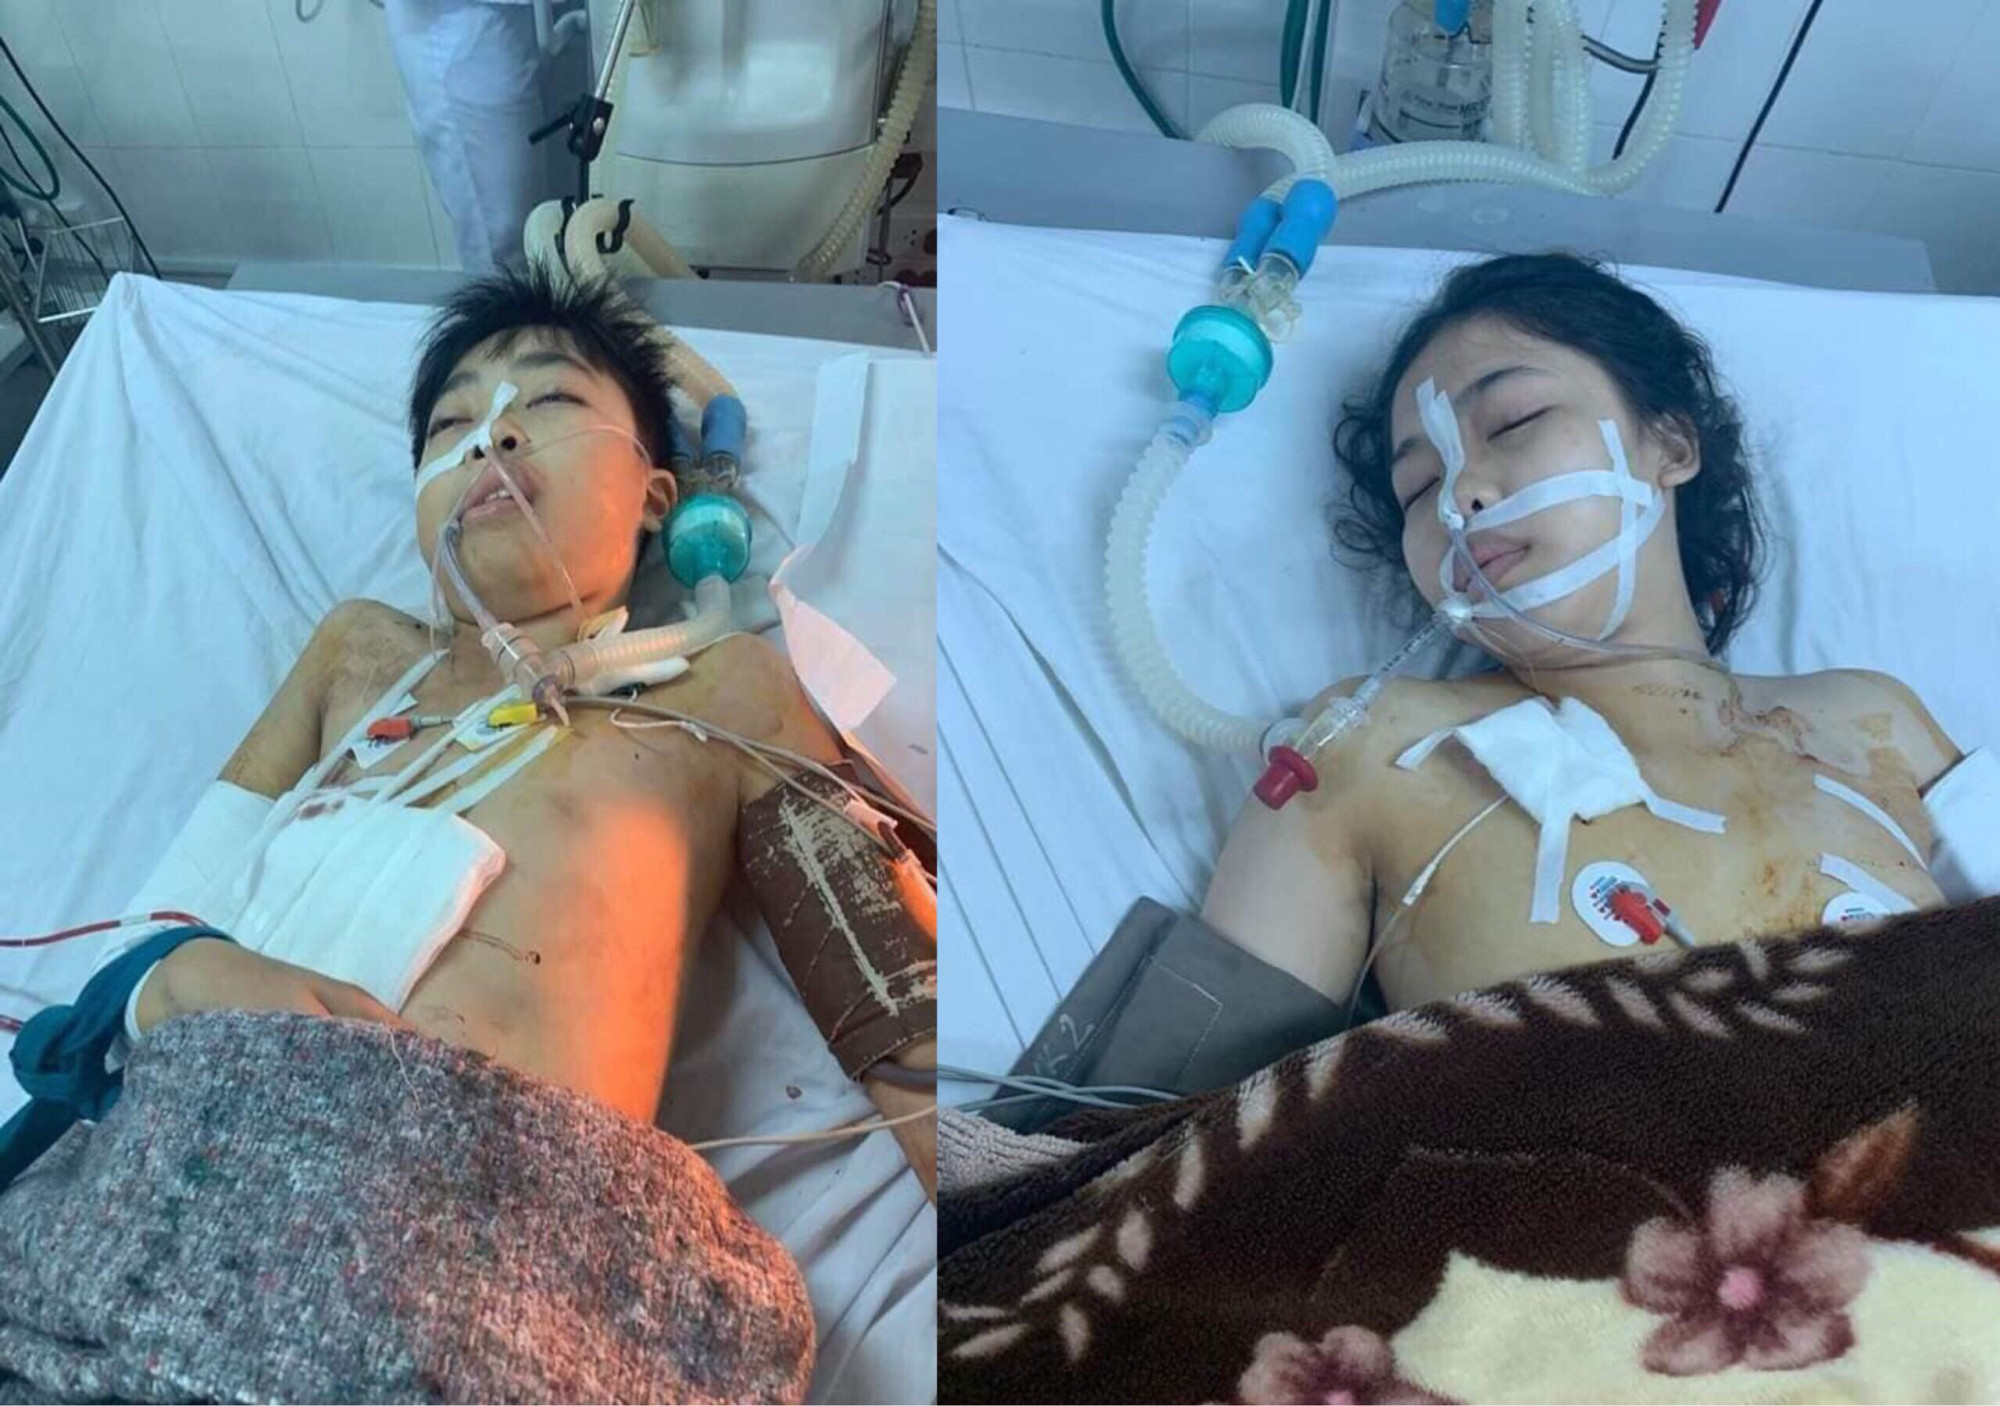 Hình ảnh đau xót trong bệnh viện của 2 cháu bé bị người tình của mẹ bắn. Cả hai đều đang nguy kịch.